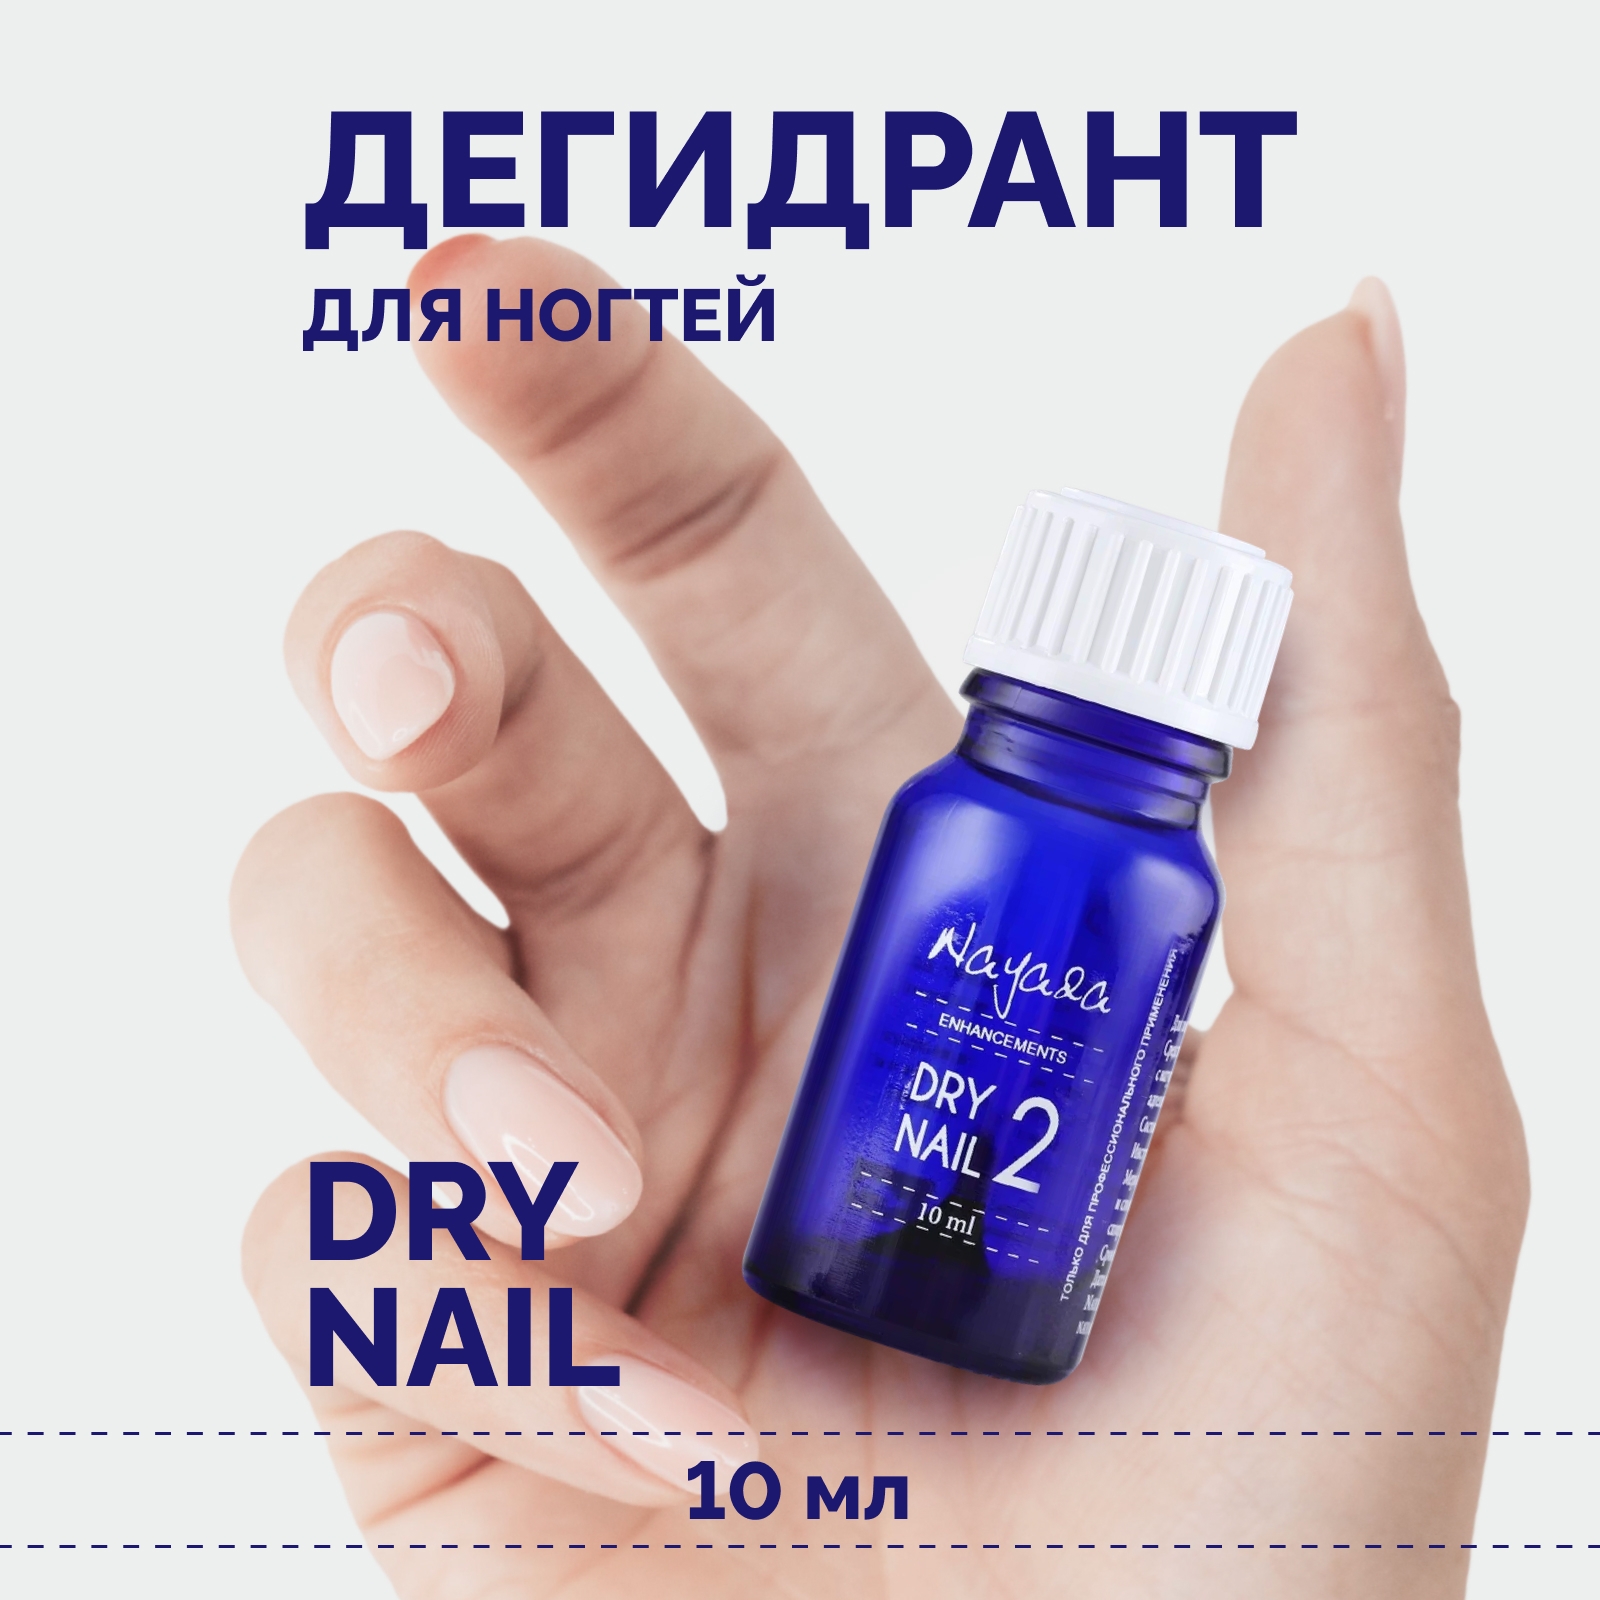 Дегидрант для ногтей Nayada Dry nail обезжириватель, 10 мл e mi средство для дегидратации натурального ногтя e milac nail prep aid 9 мл